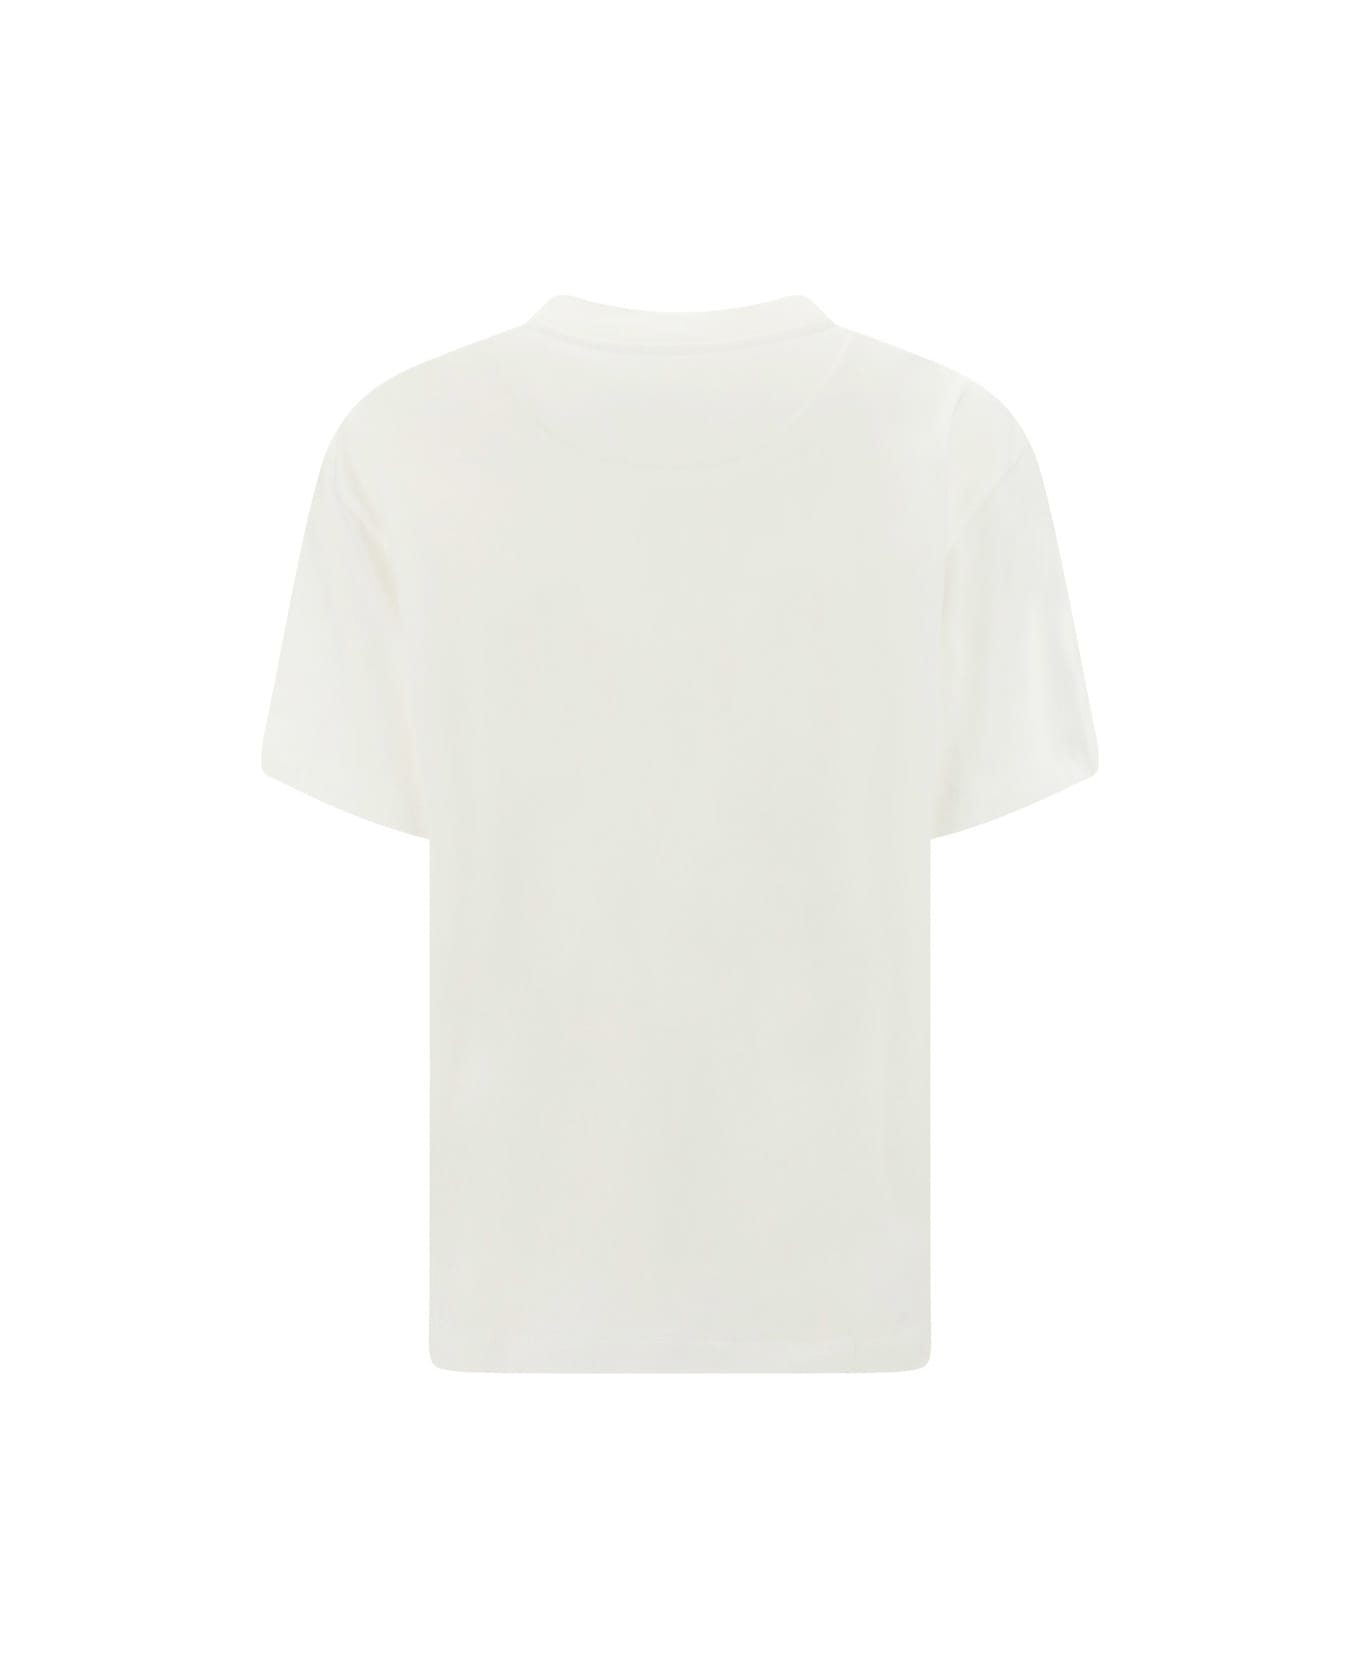 Jil Sander T-shirt - Bianco